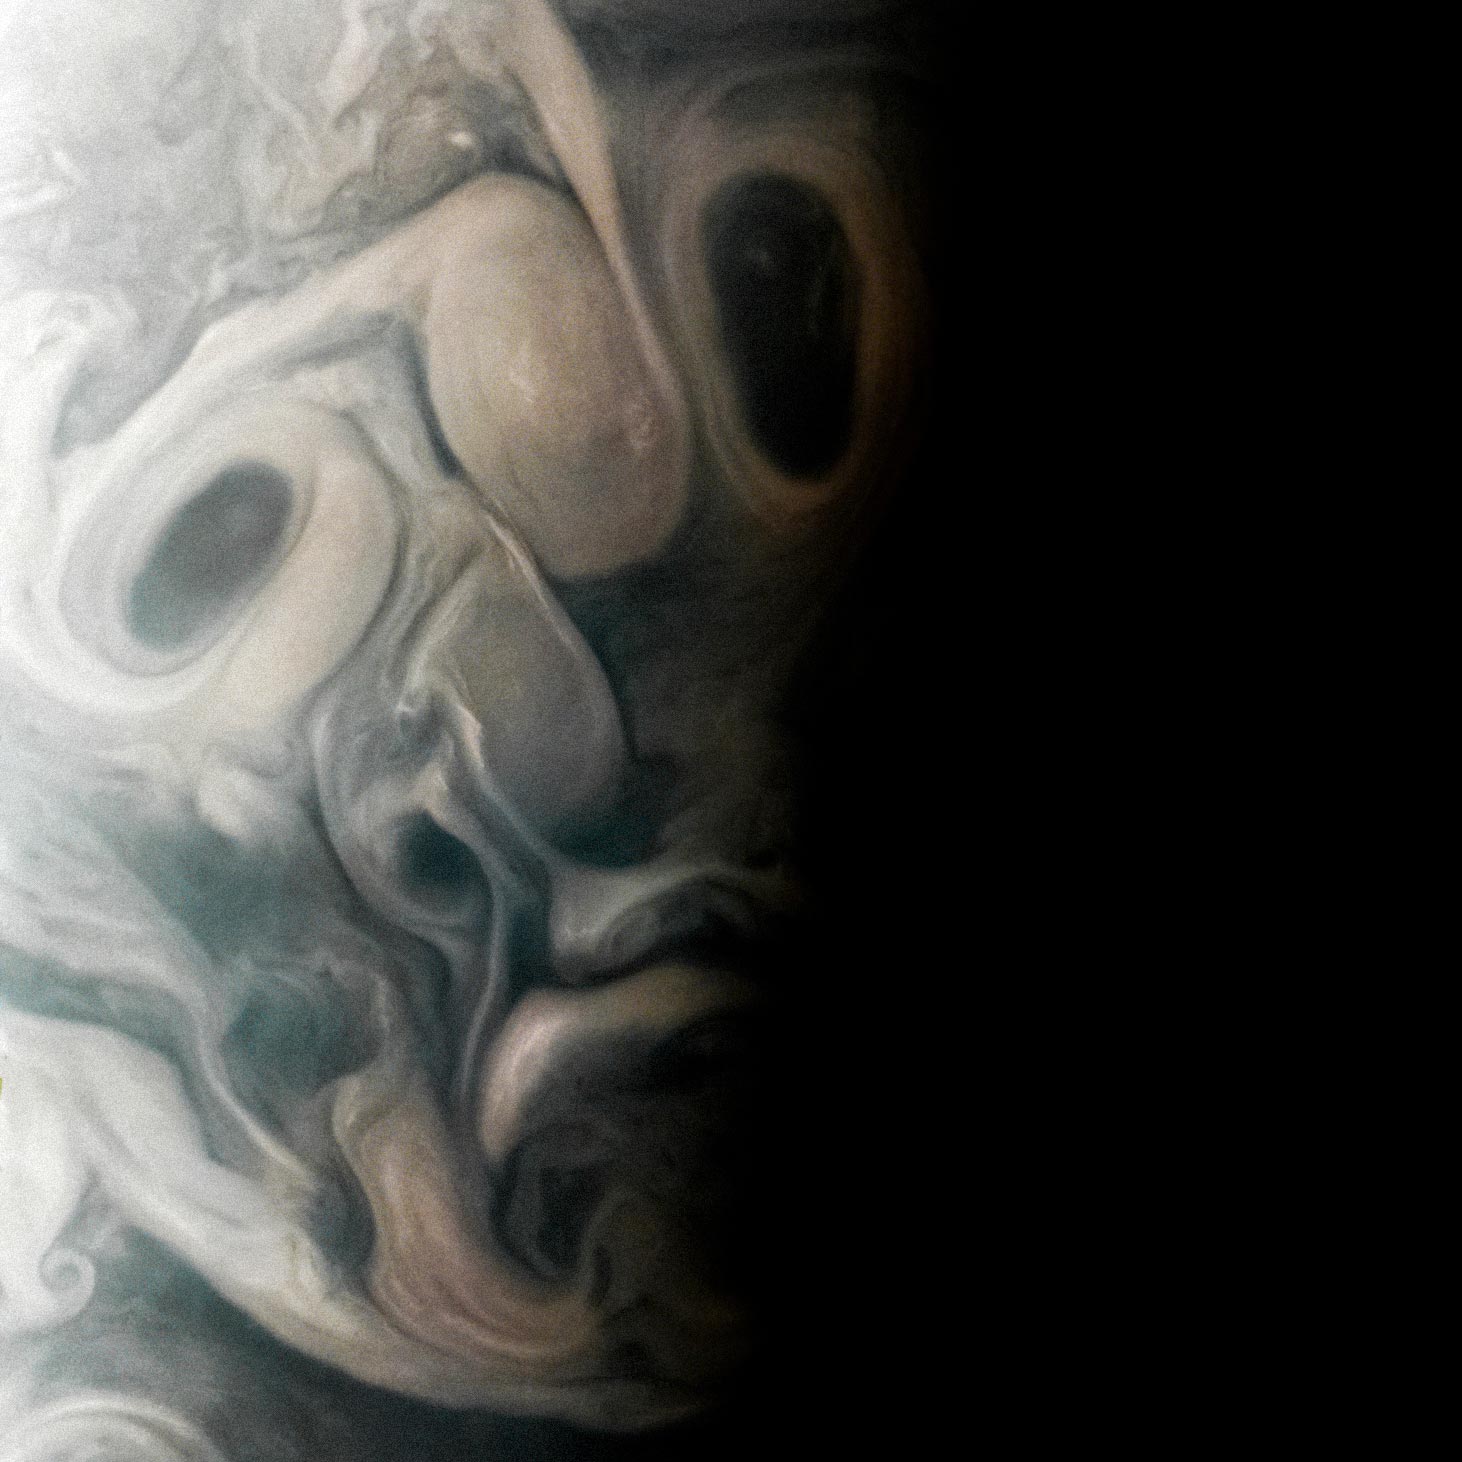 La misión Juno de la NASA vislumbra una misteriosa “cara” en Júpiter